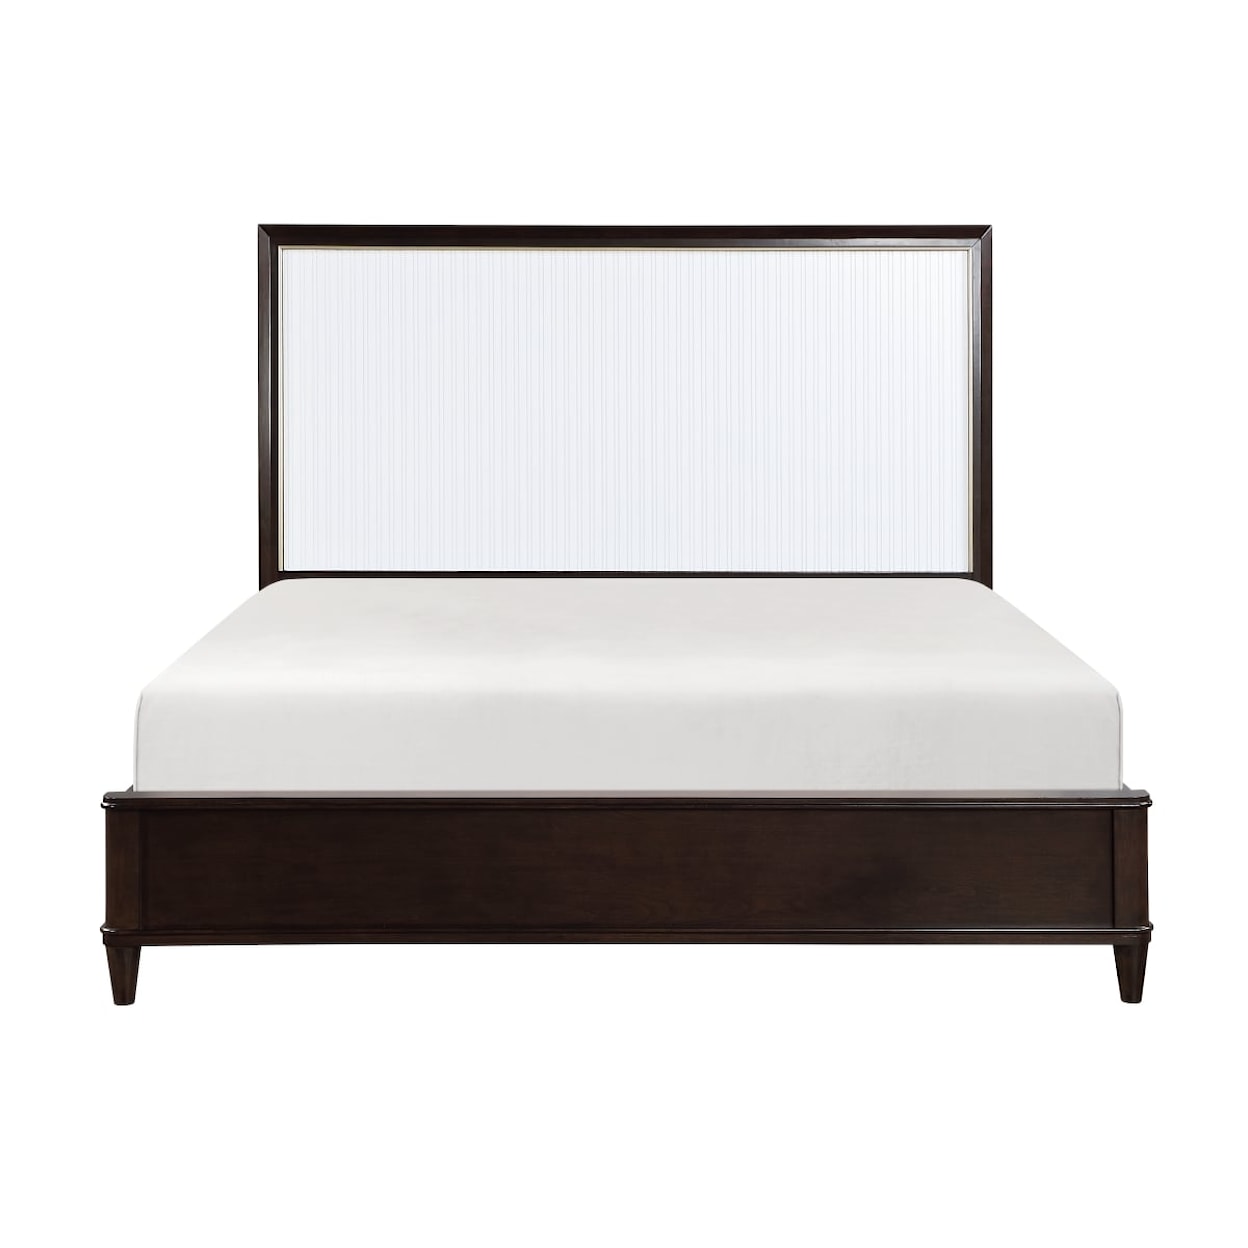 Homelegance Furniture Niles King Bed